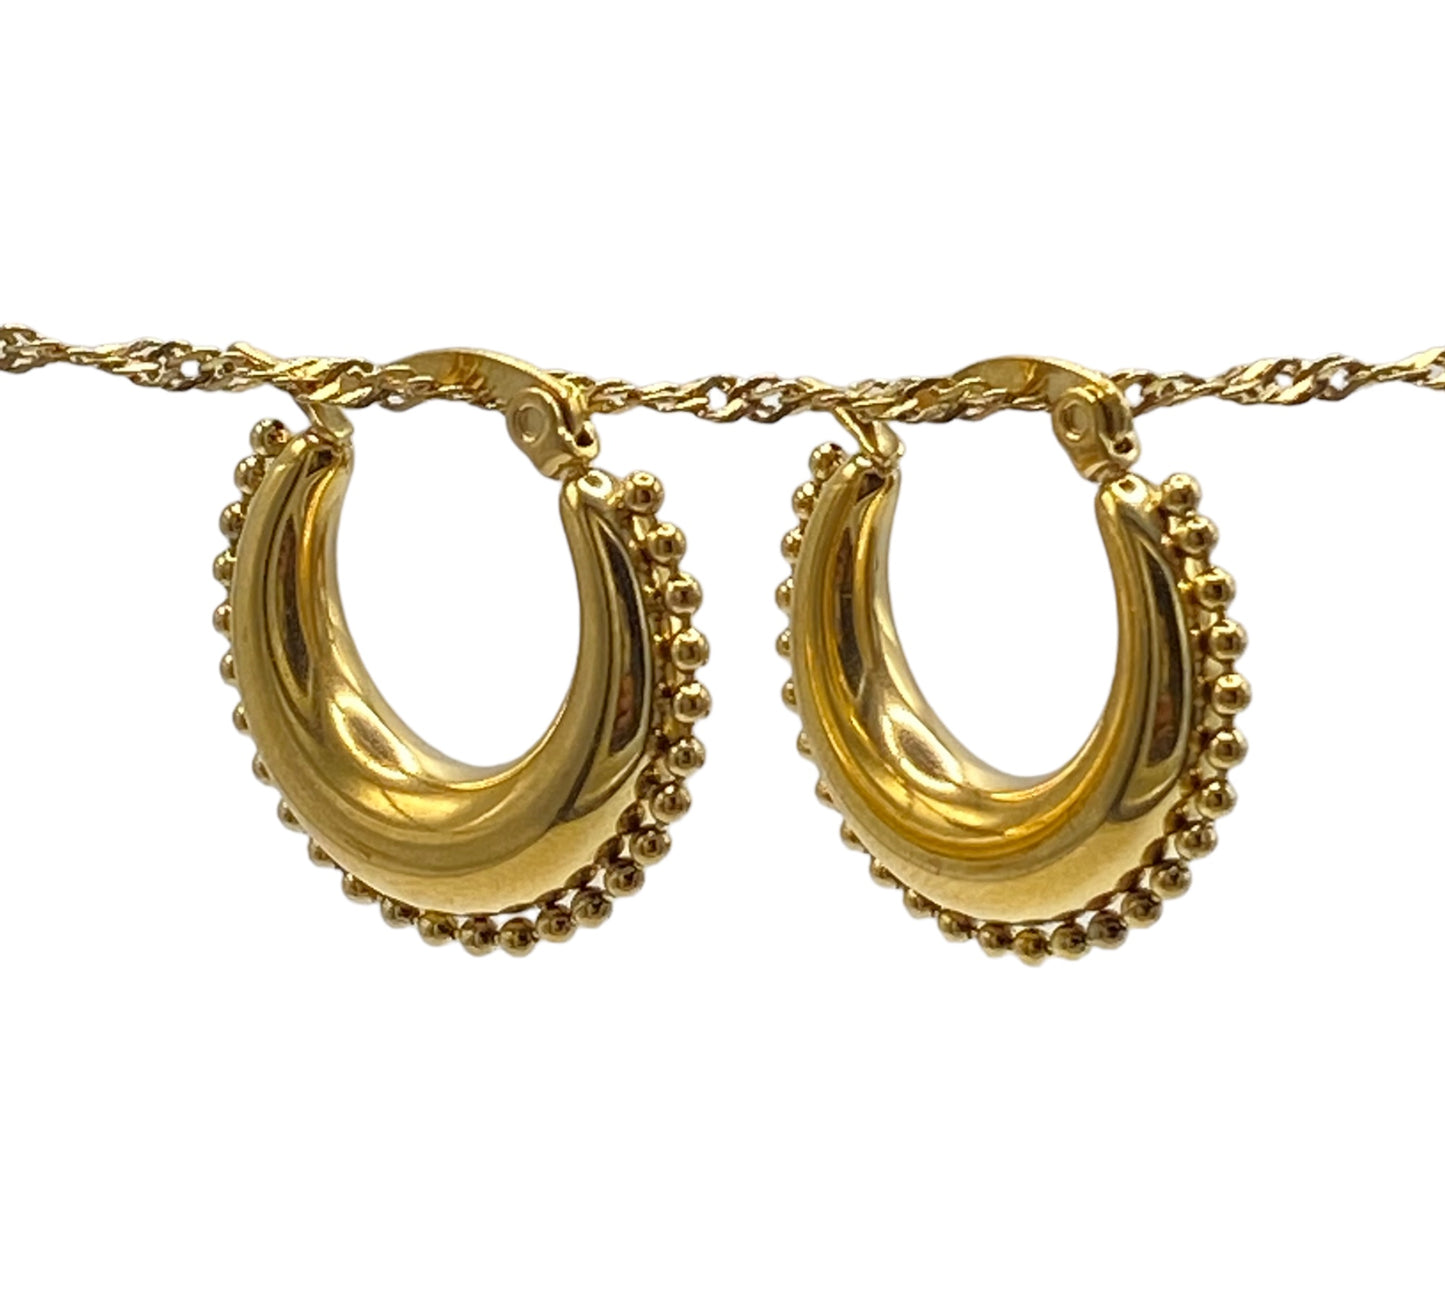 "LUCK" gold plated vintage inspired hoop earrings